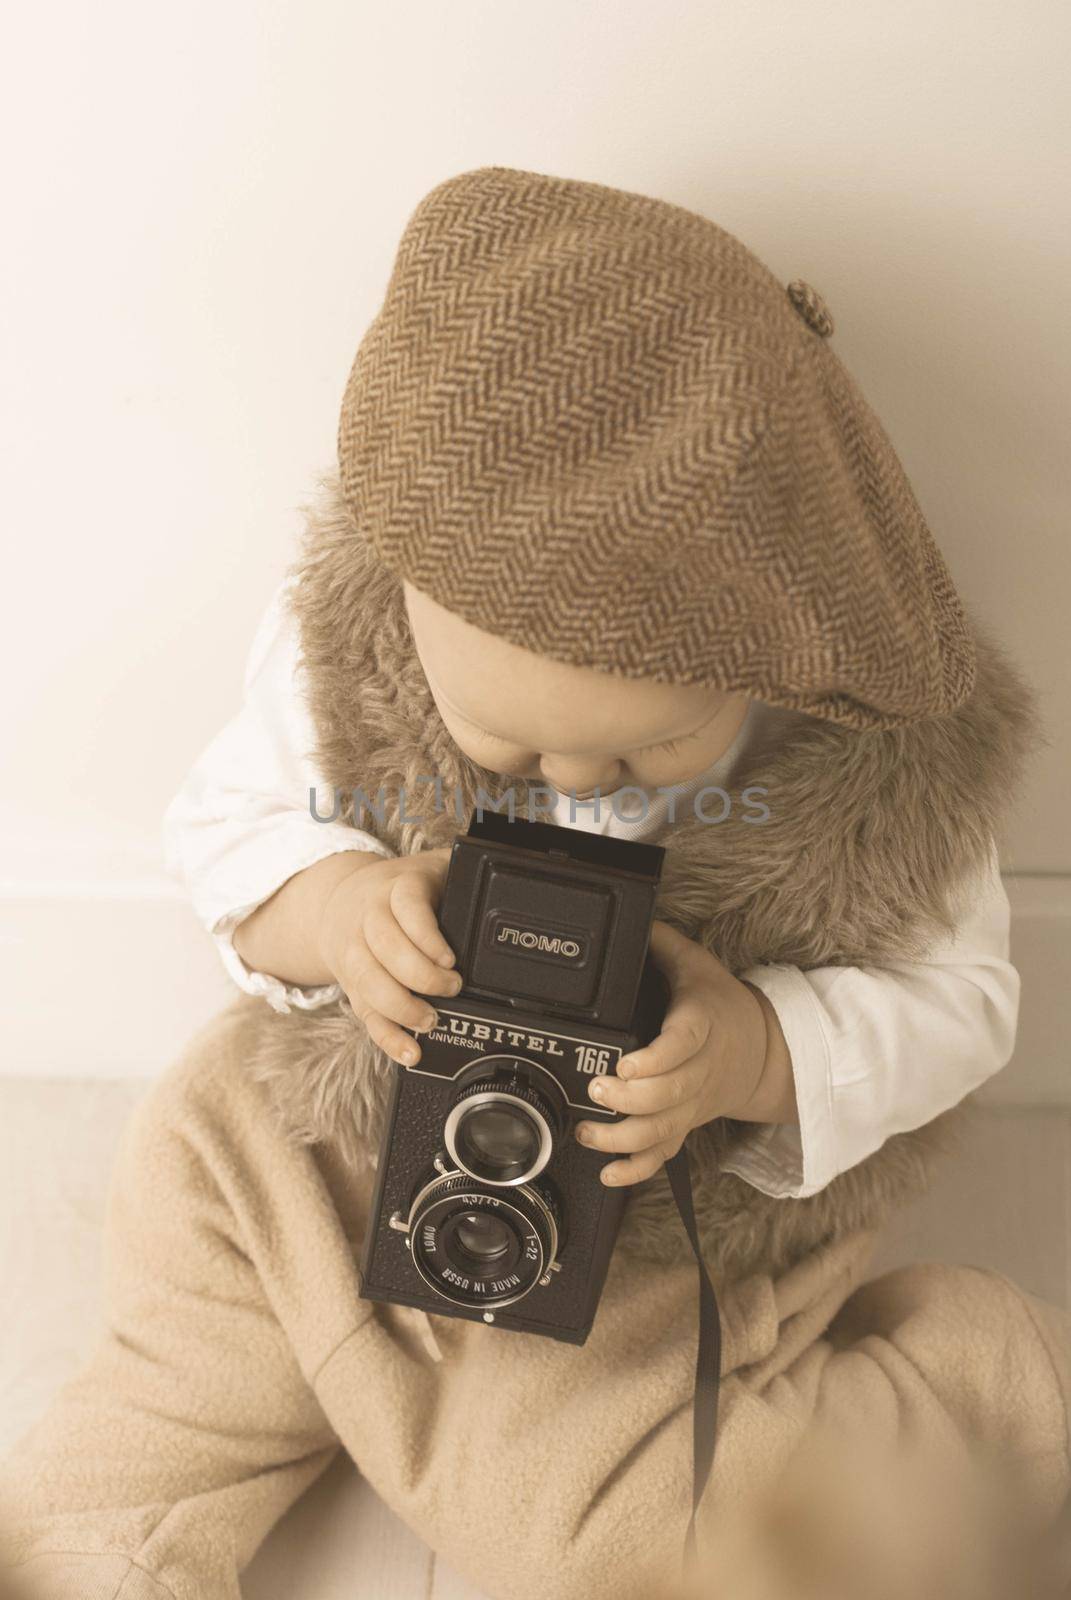 Cute baby with retro camera by maramorosz